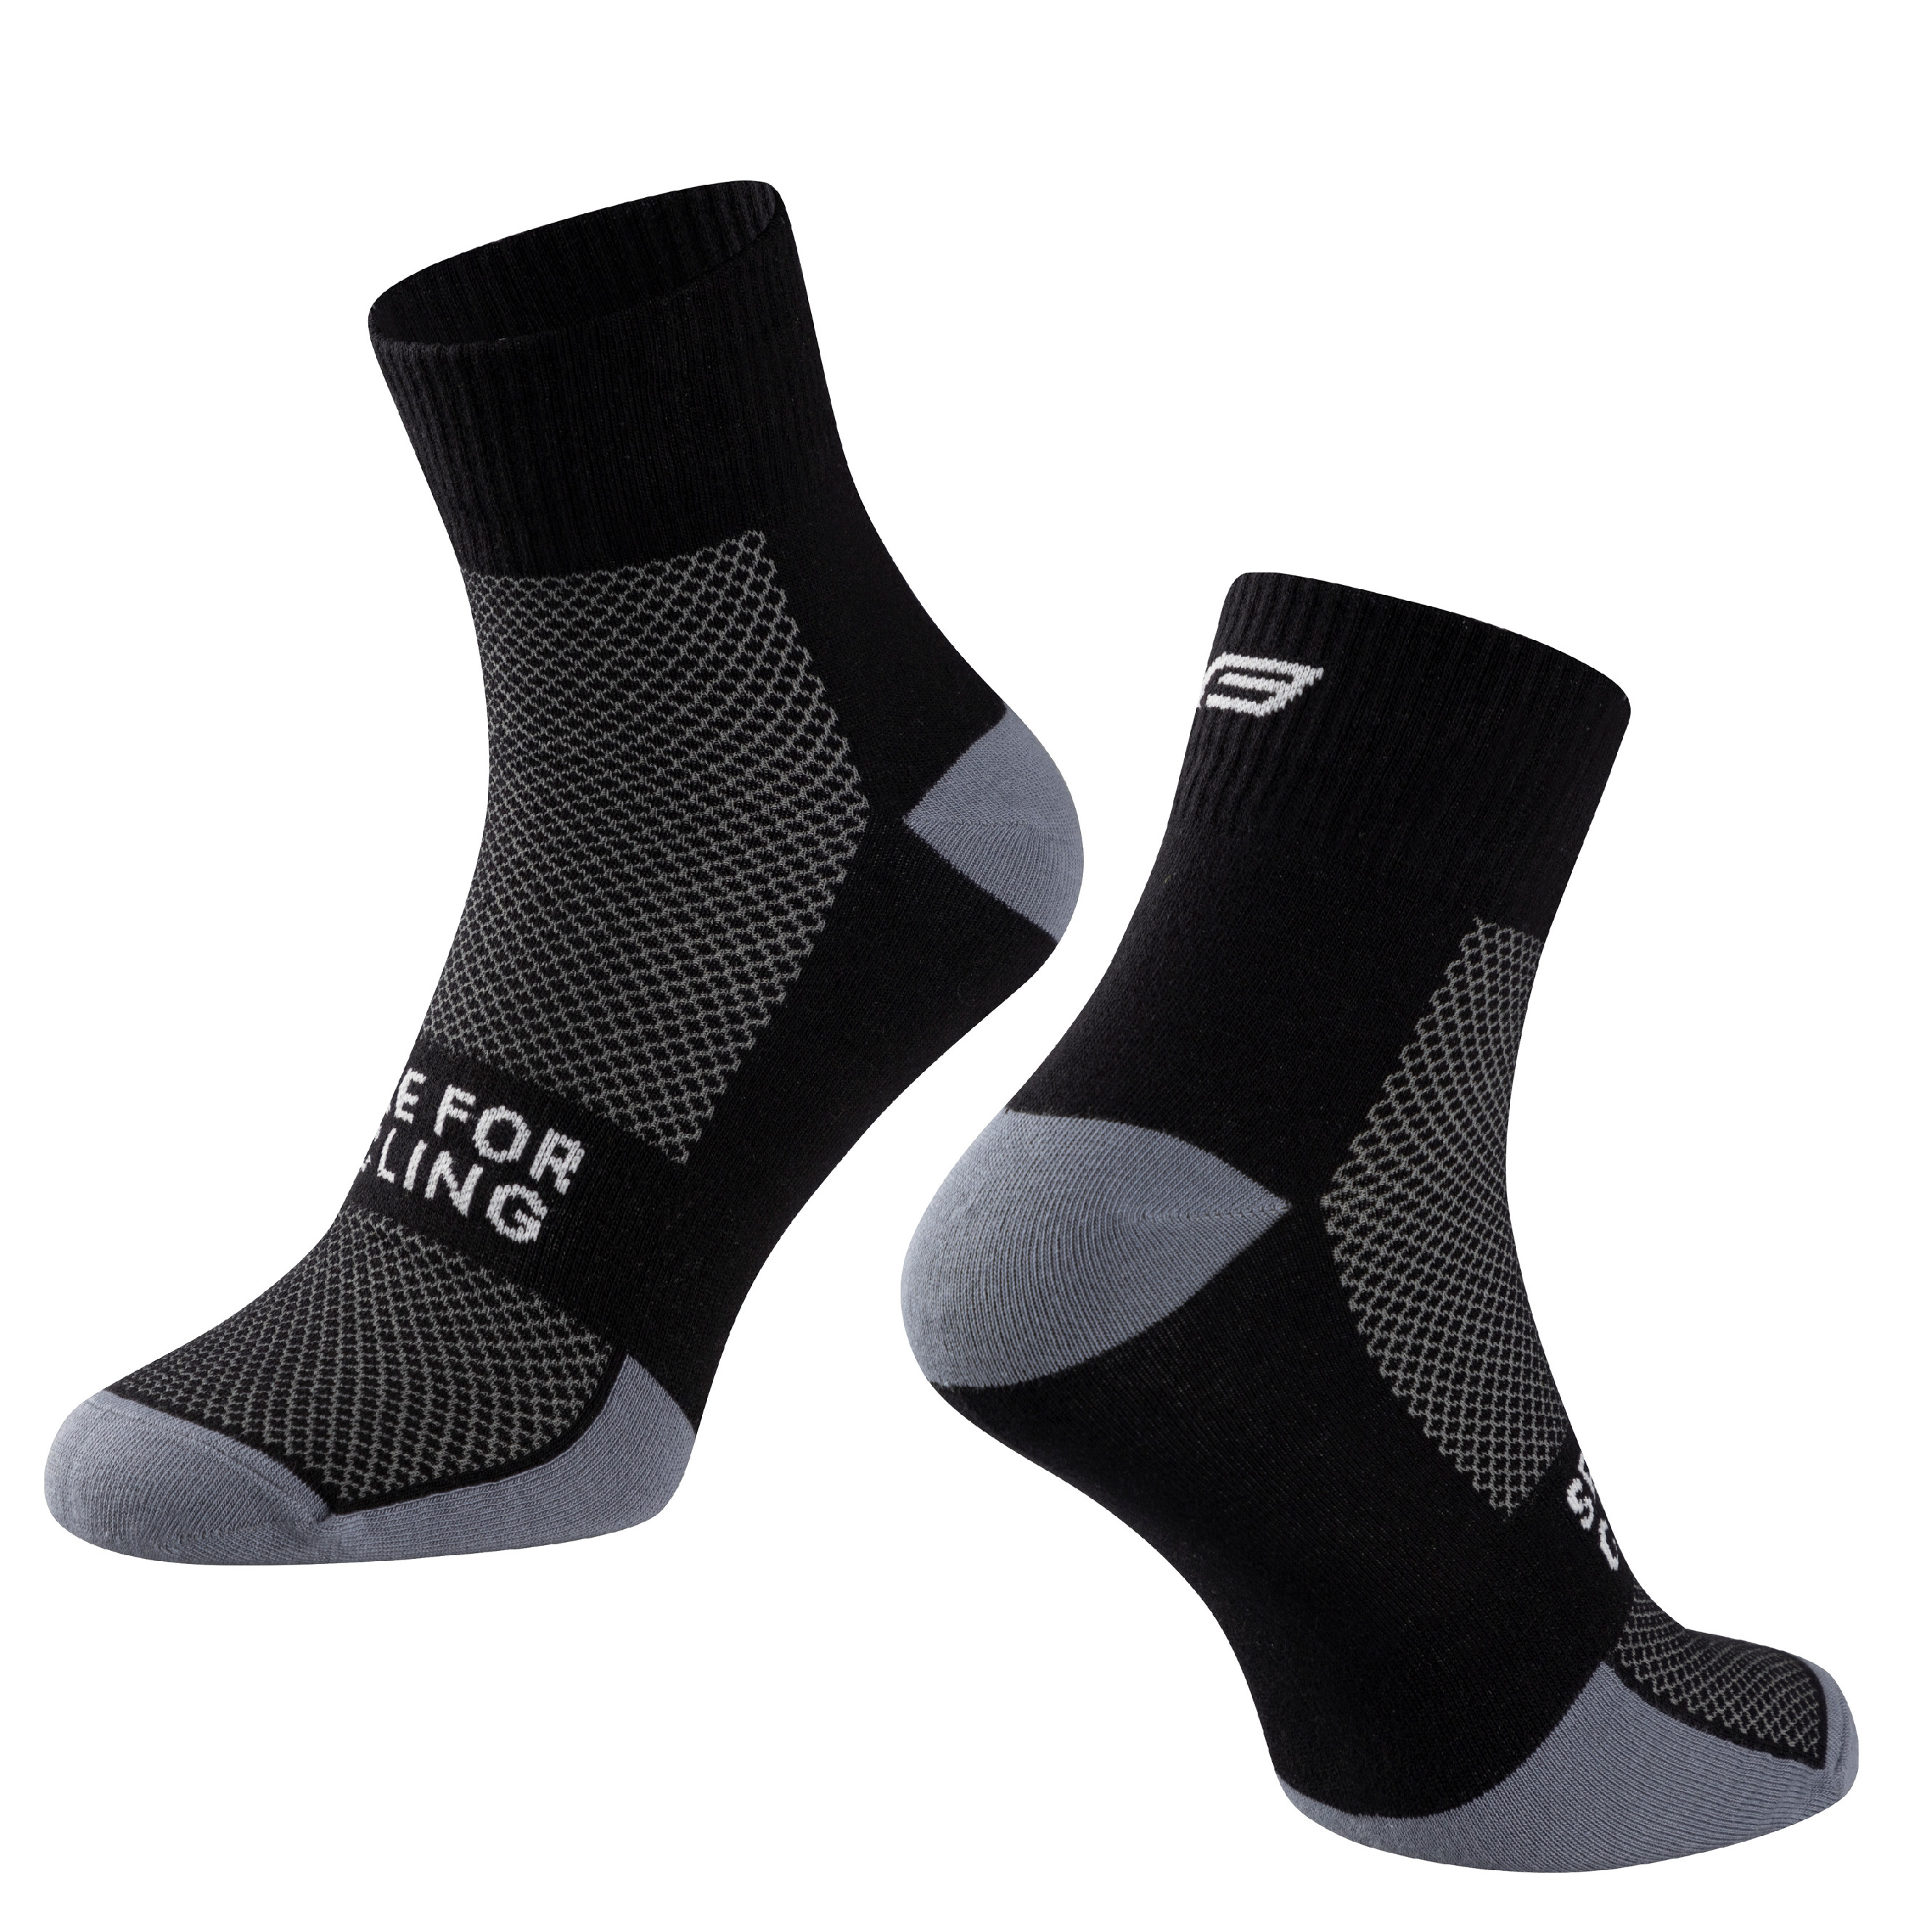 ponožky FORCE EDGE, černo-šedé L-XL/42-46 Velikost: S-M